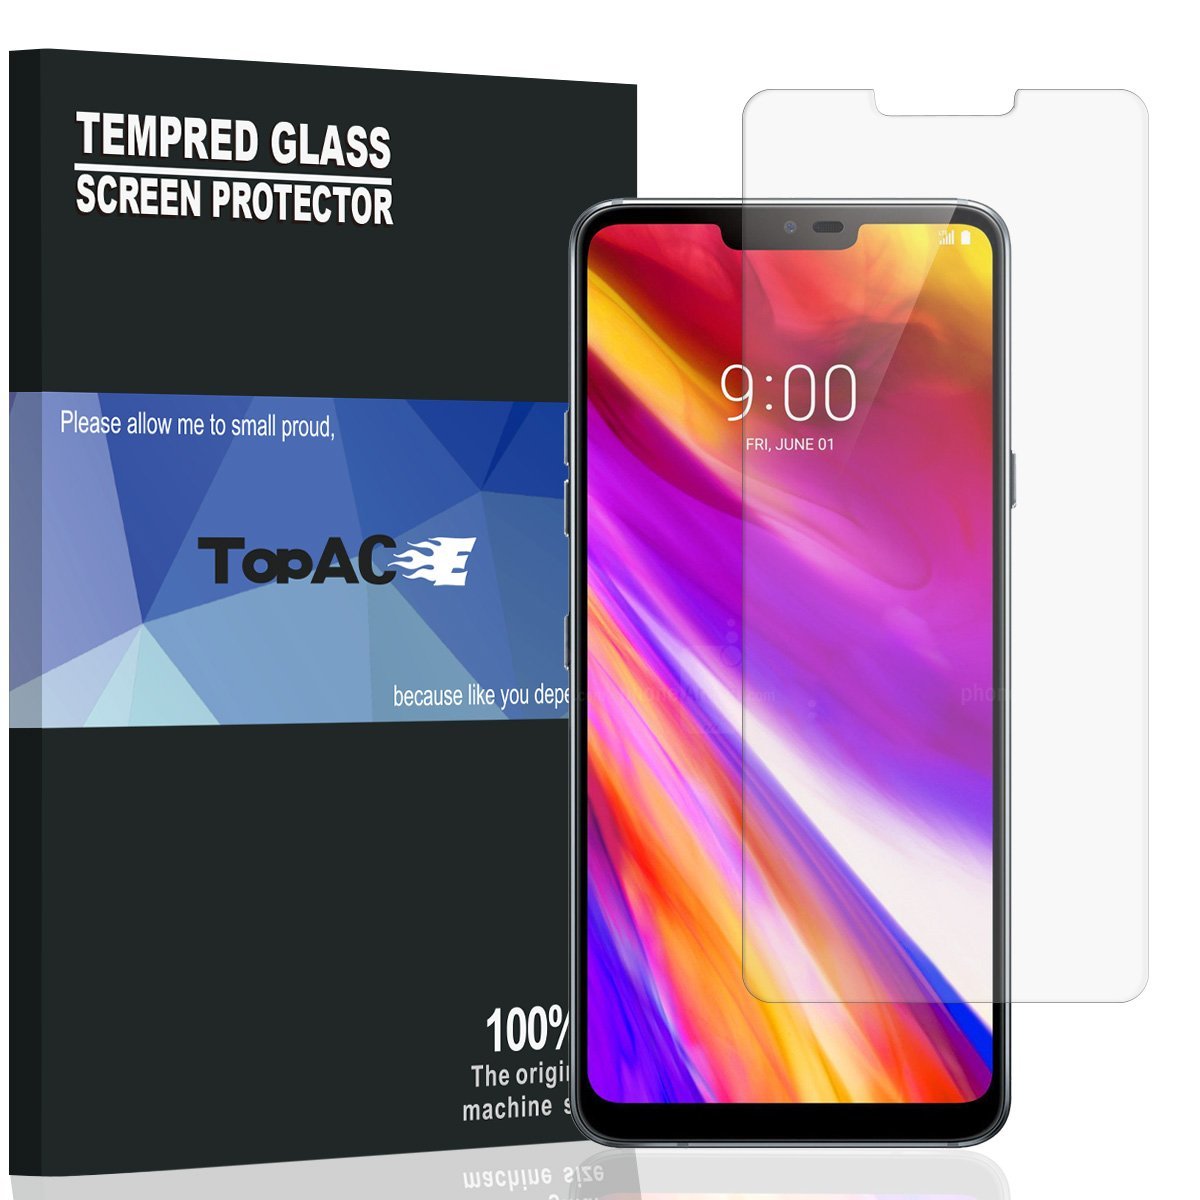 LG G7 screen protectors - TopACE